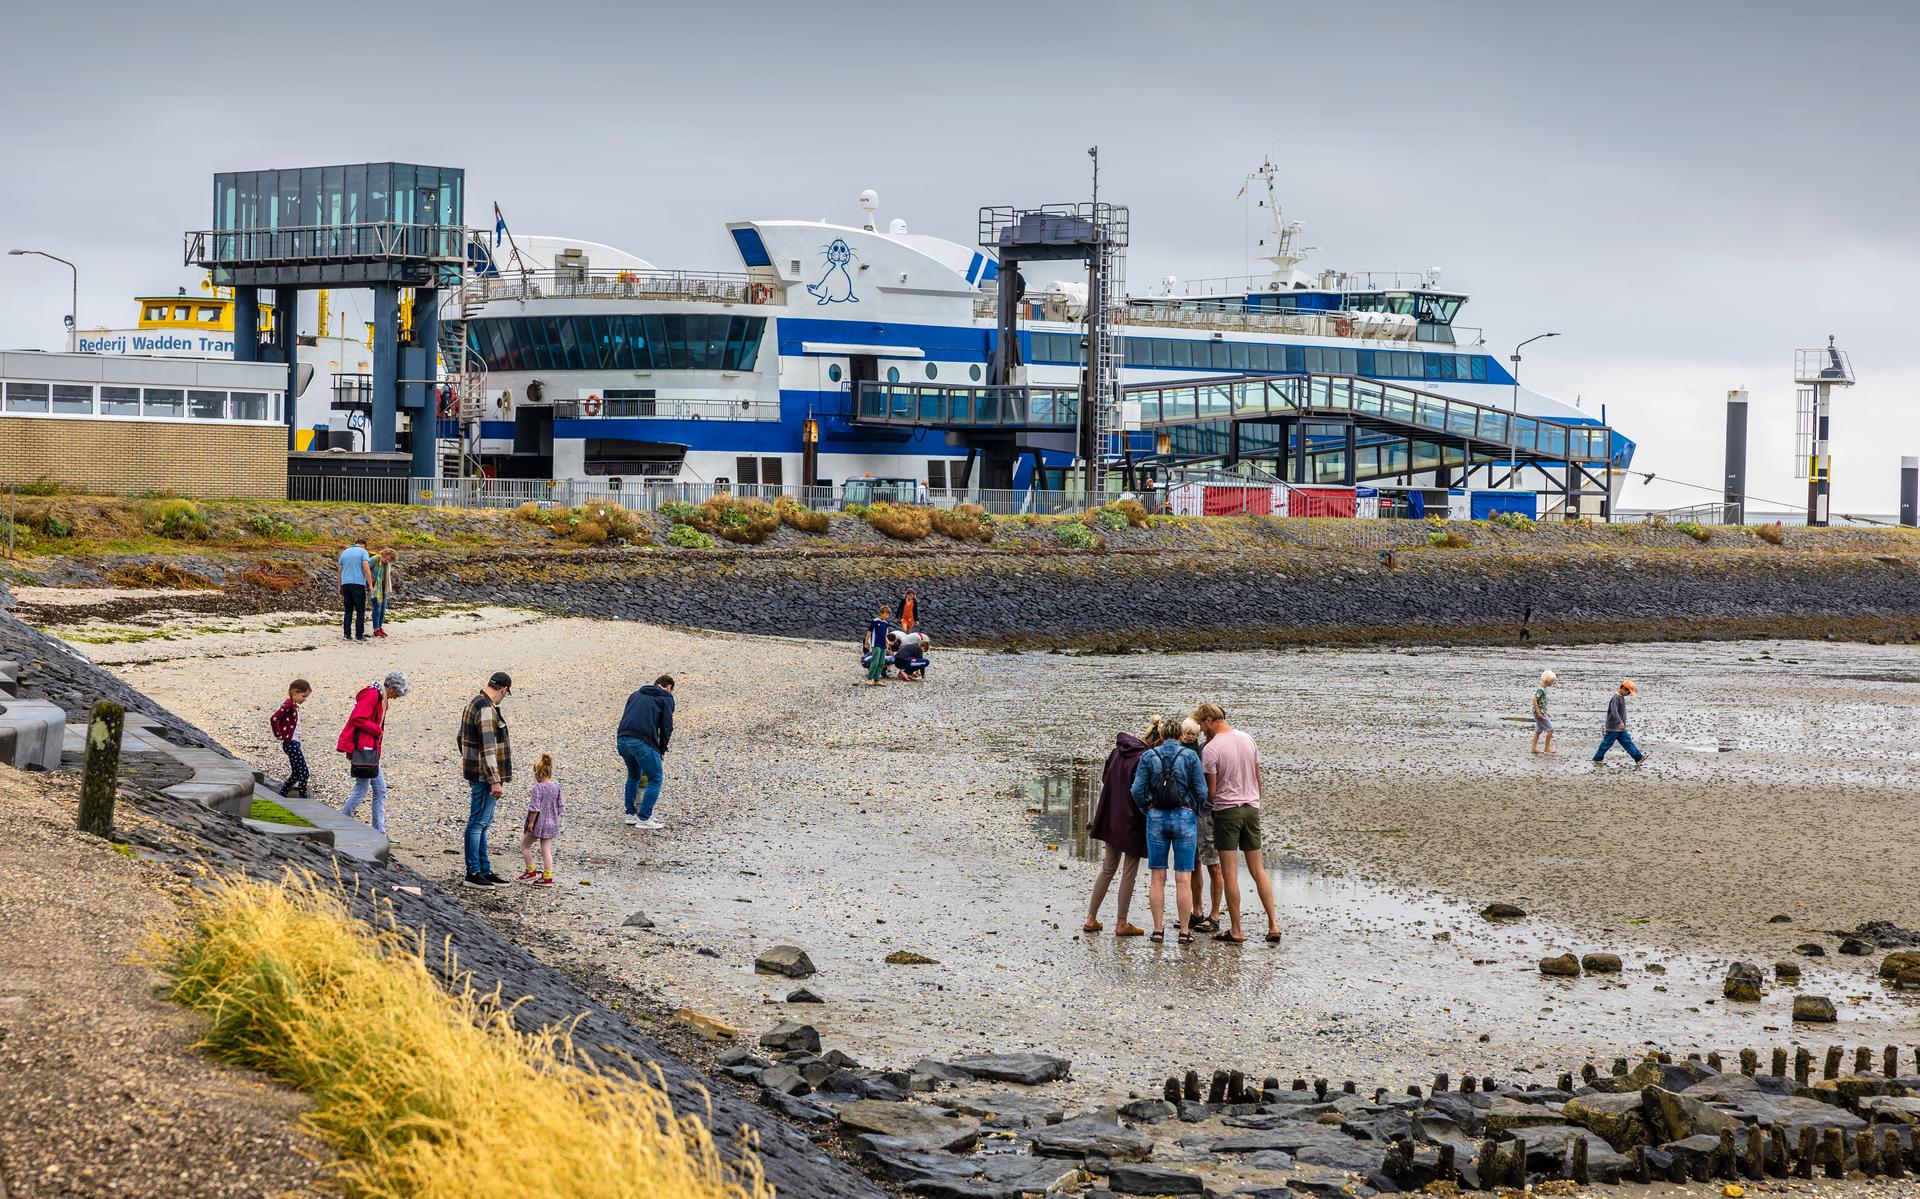 Toeristen vermaken zich op Vlieland op het wad, pal naast de aanlegplek van de veerboot. 